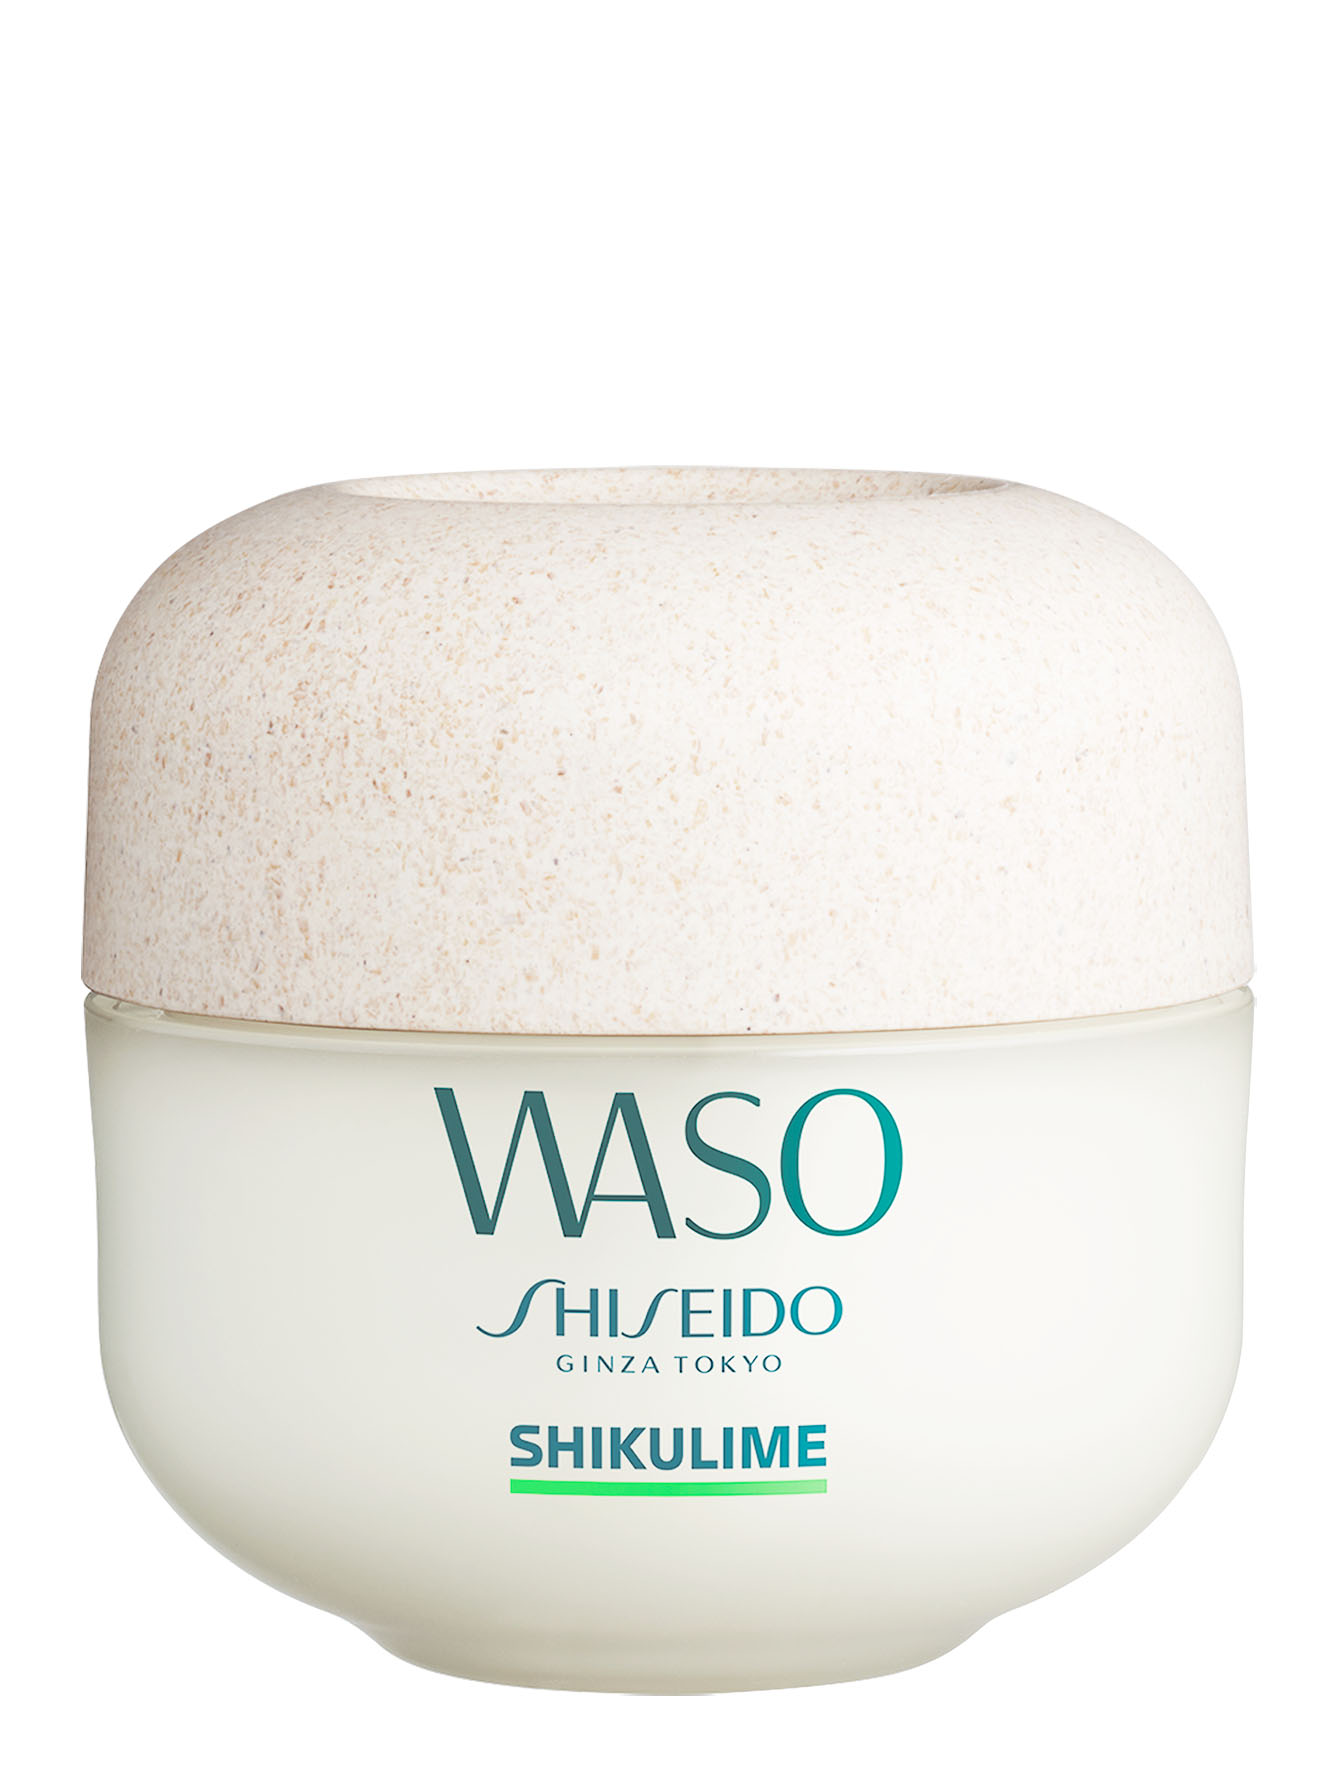 Shiseido shikulime. Shiseido ночная восстанавливающая маска Waso Yuzu-c. Крем Waso shikulime. Shiseido Waso маска. Крем Shiseido Waso.